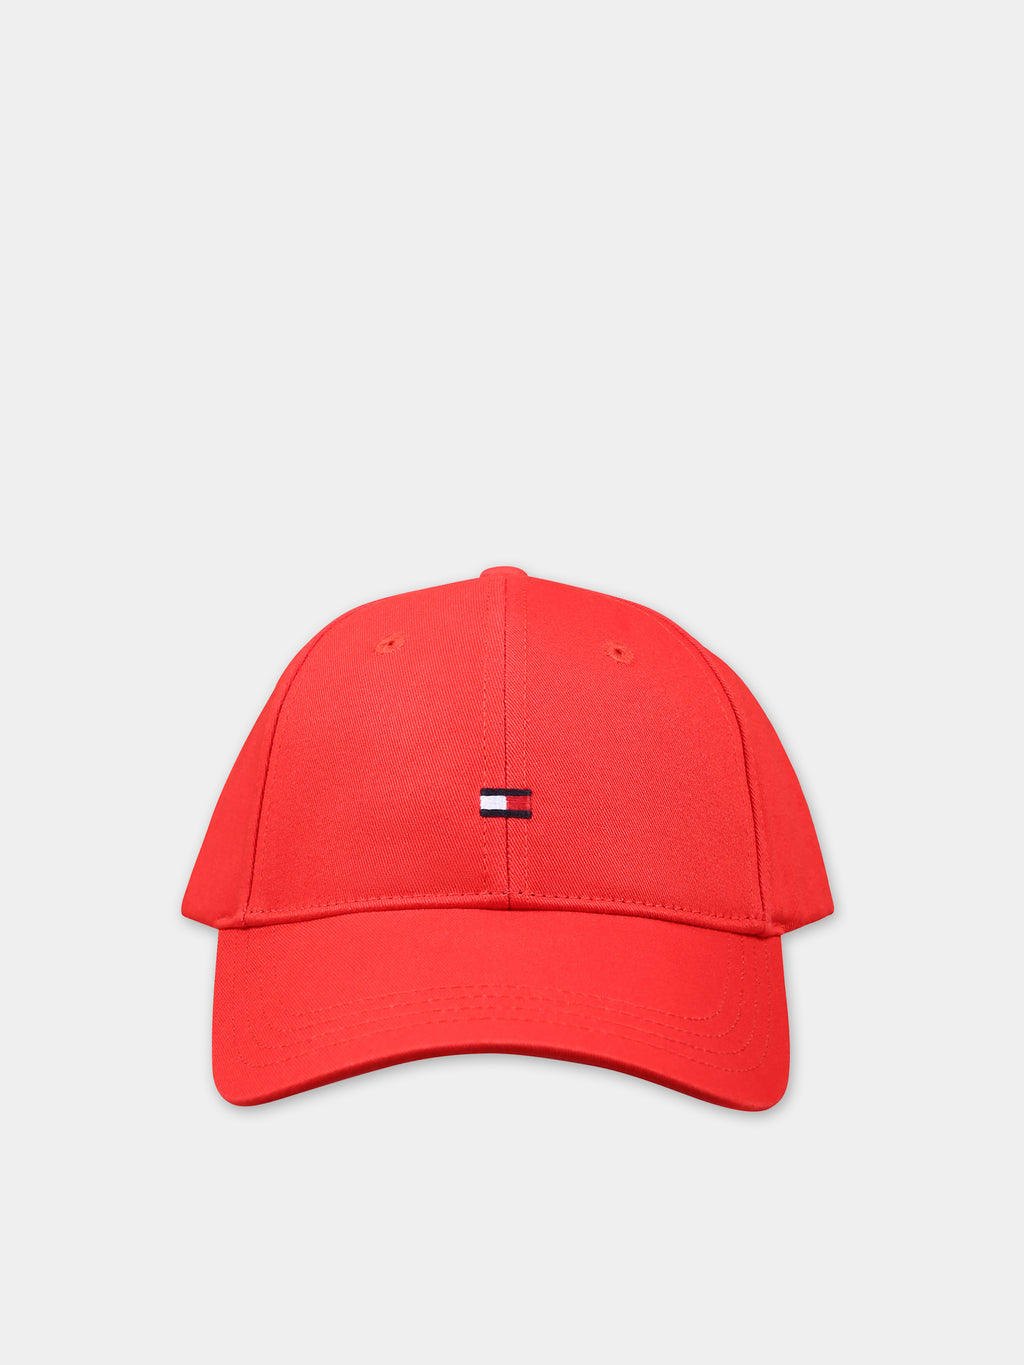 Chapeau rouge pour enfants avec logo